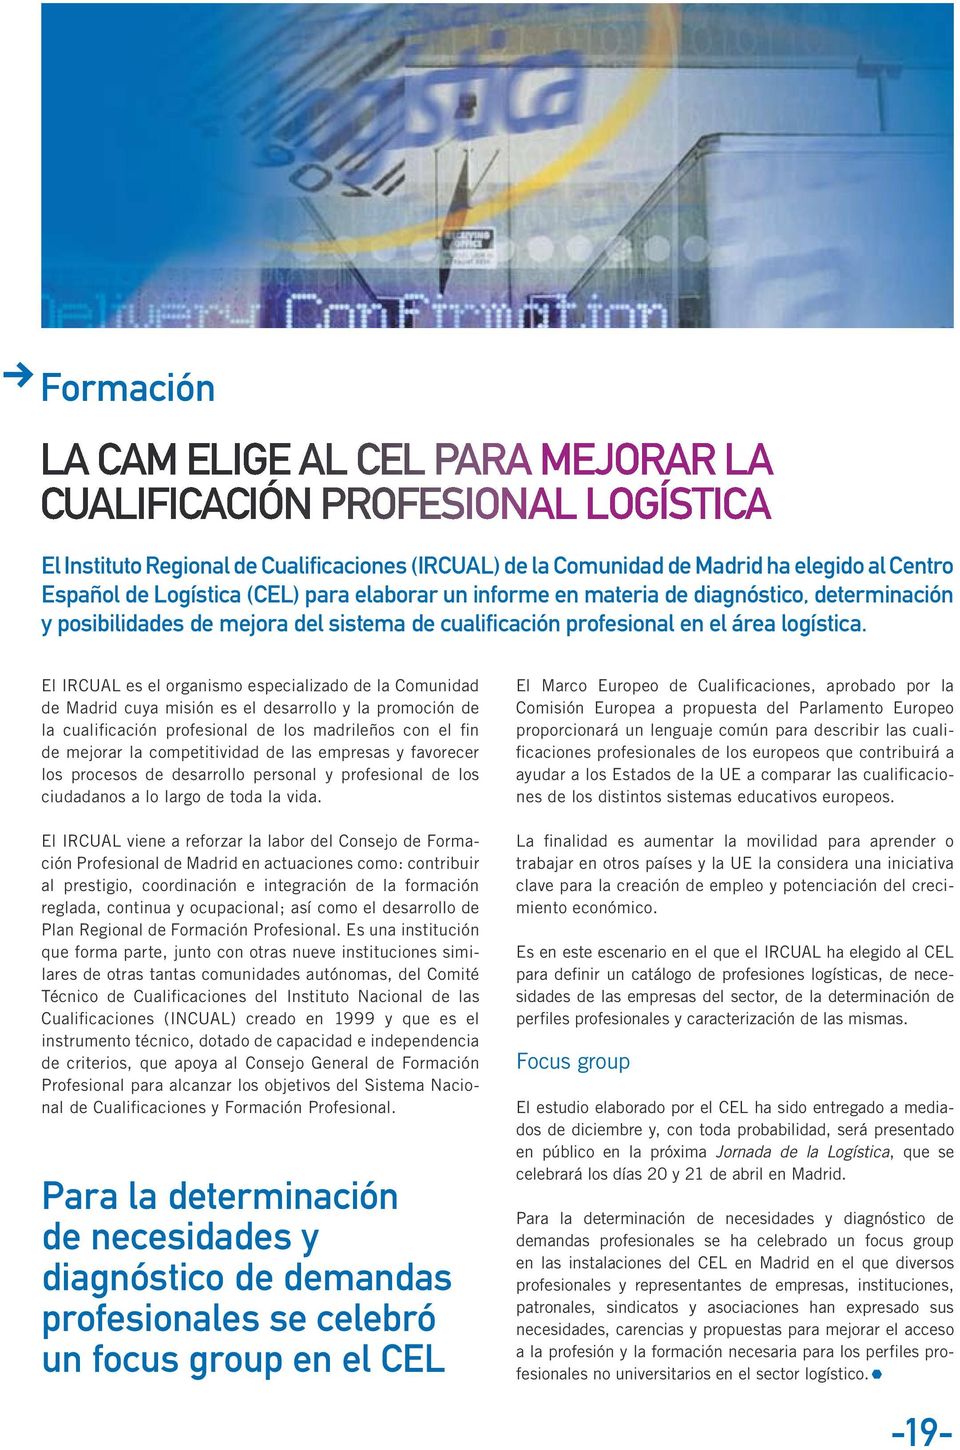 El IRCUAL es el organismo especializado de la Comunidad de Madrid cuya misión es el desarrollo y la promoción de la cualificación profesional de los madrileños con el fin de mejorar la competitividad